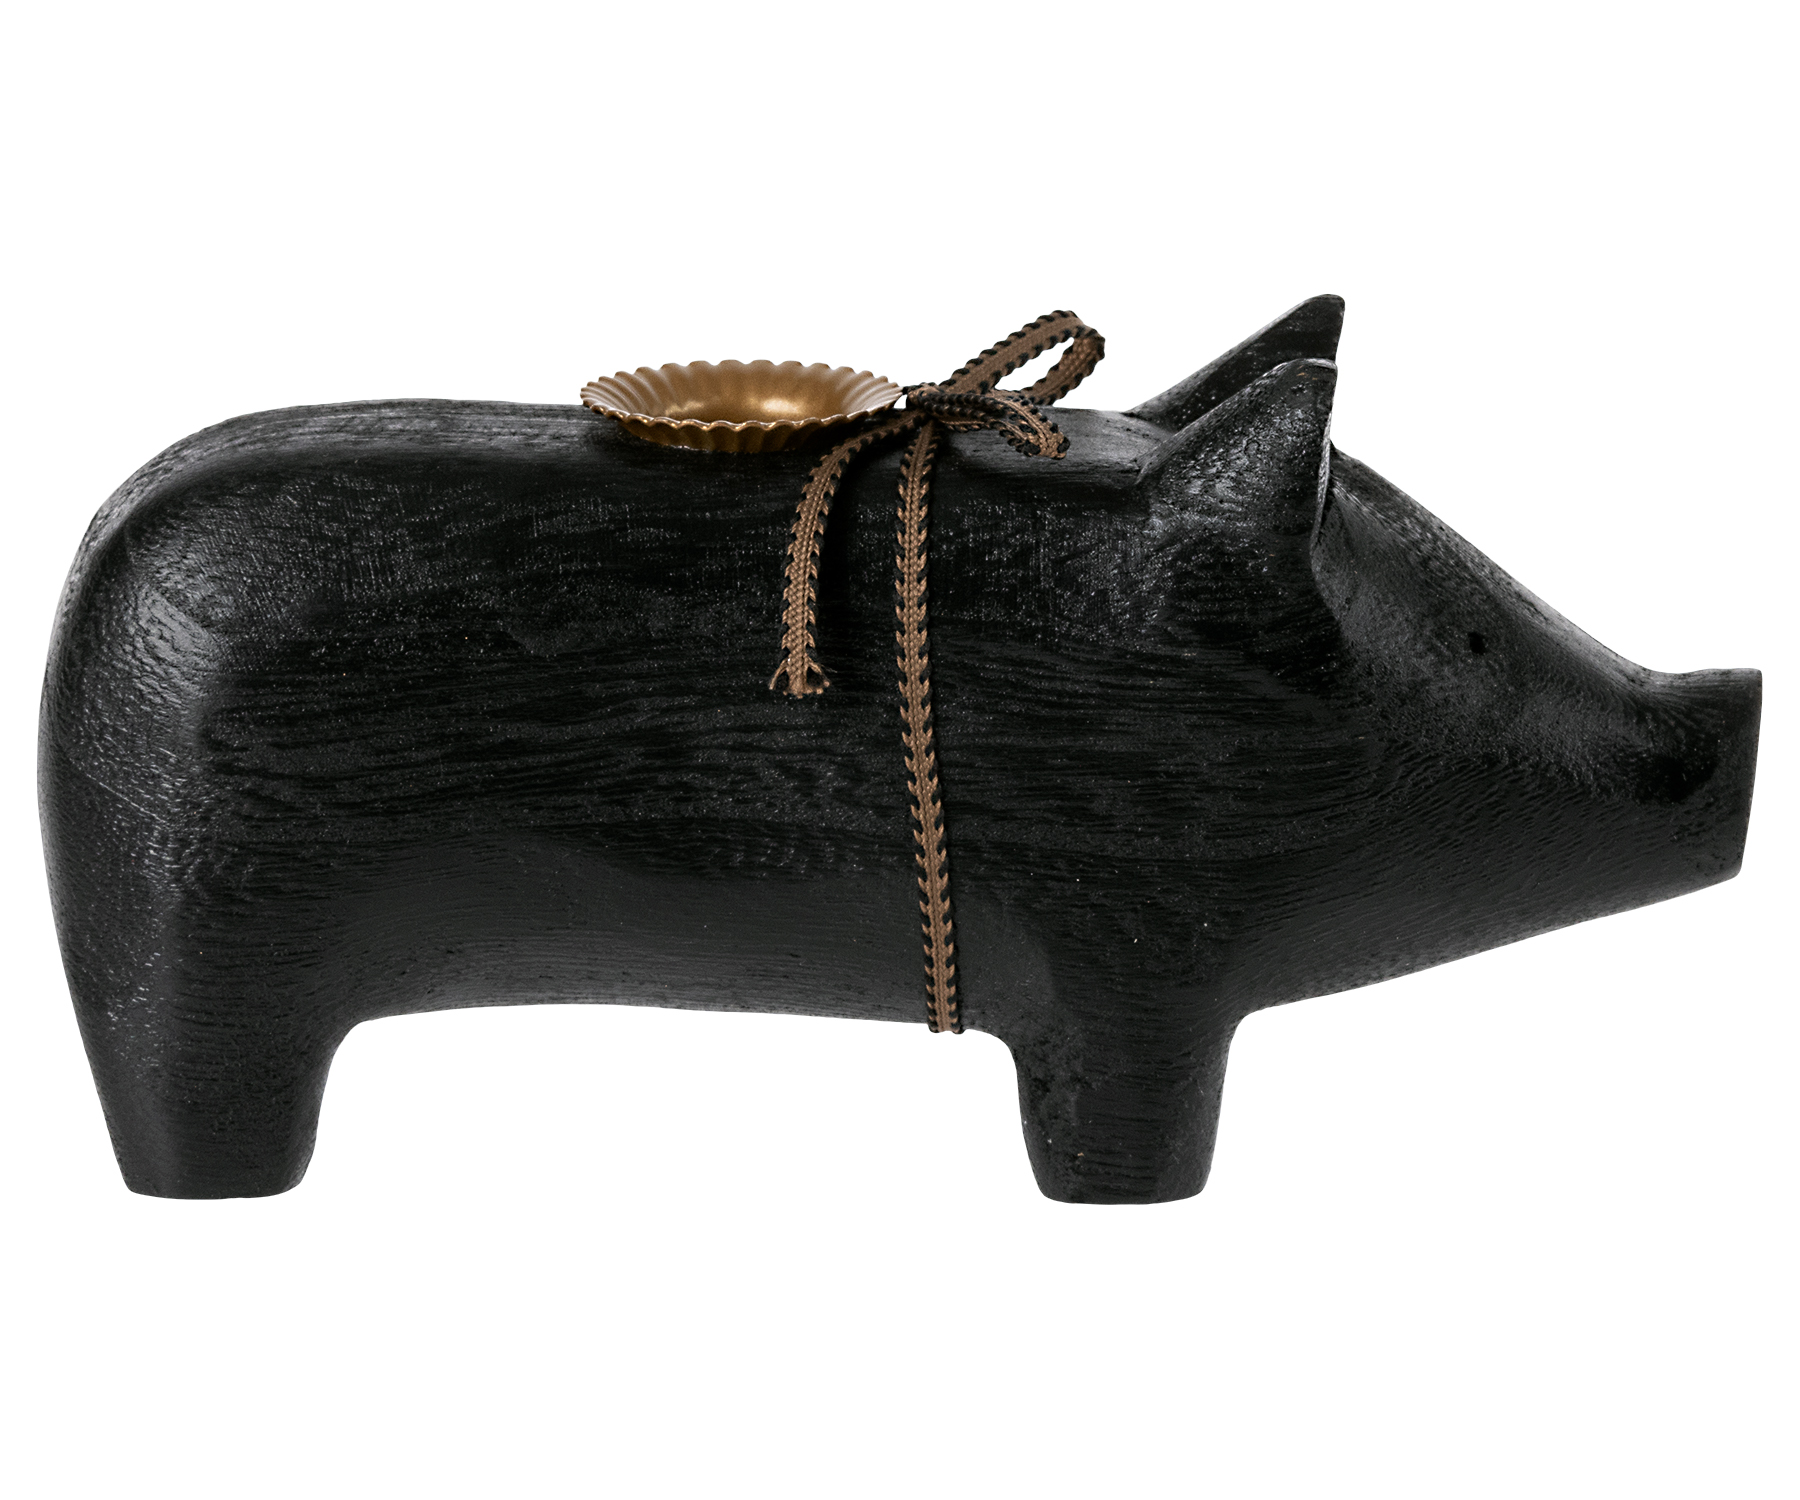 Wooden pig, Medium – Black